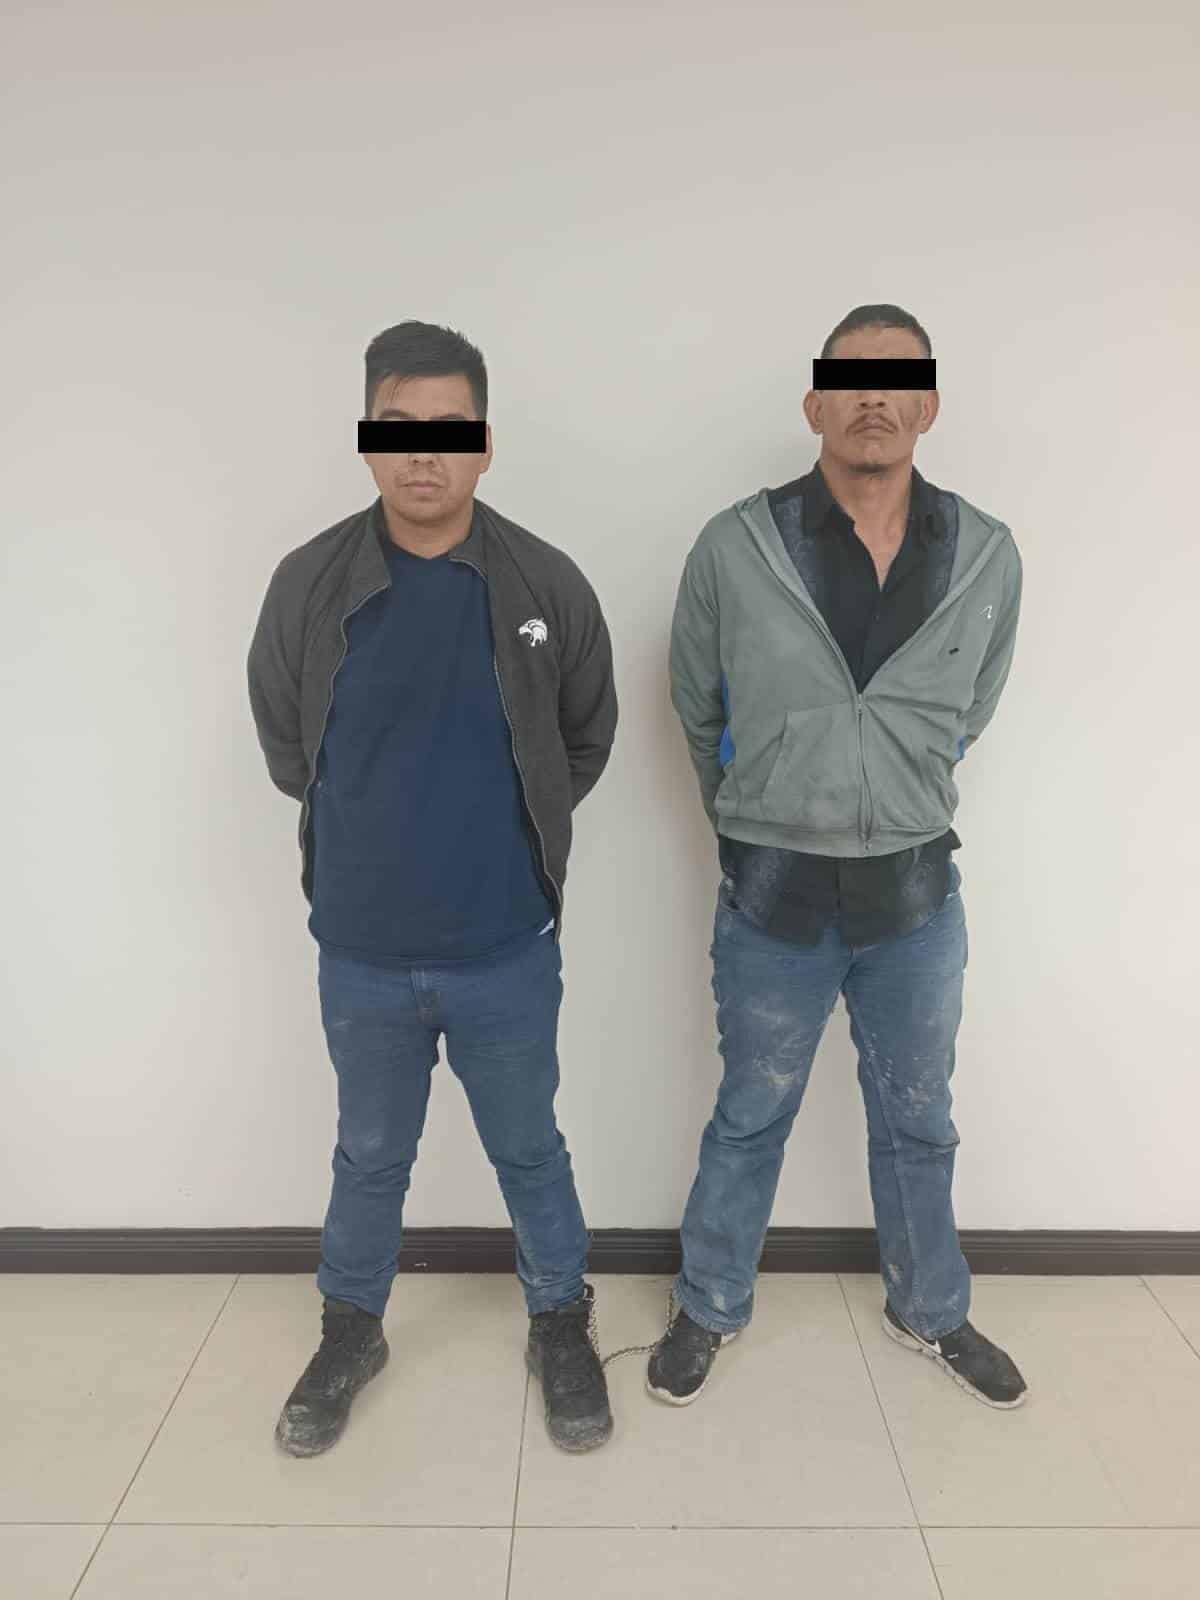 Con 35 dosis de cristal, dos presuntos narcomenudistas fueron arrestados por elementos de la policía de Cadereyta